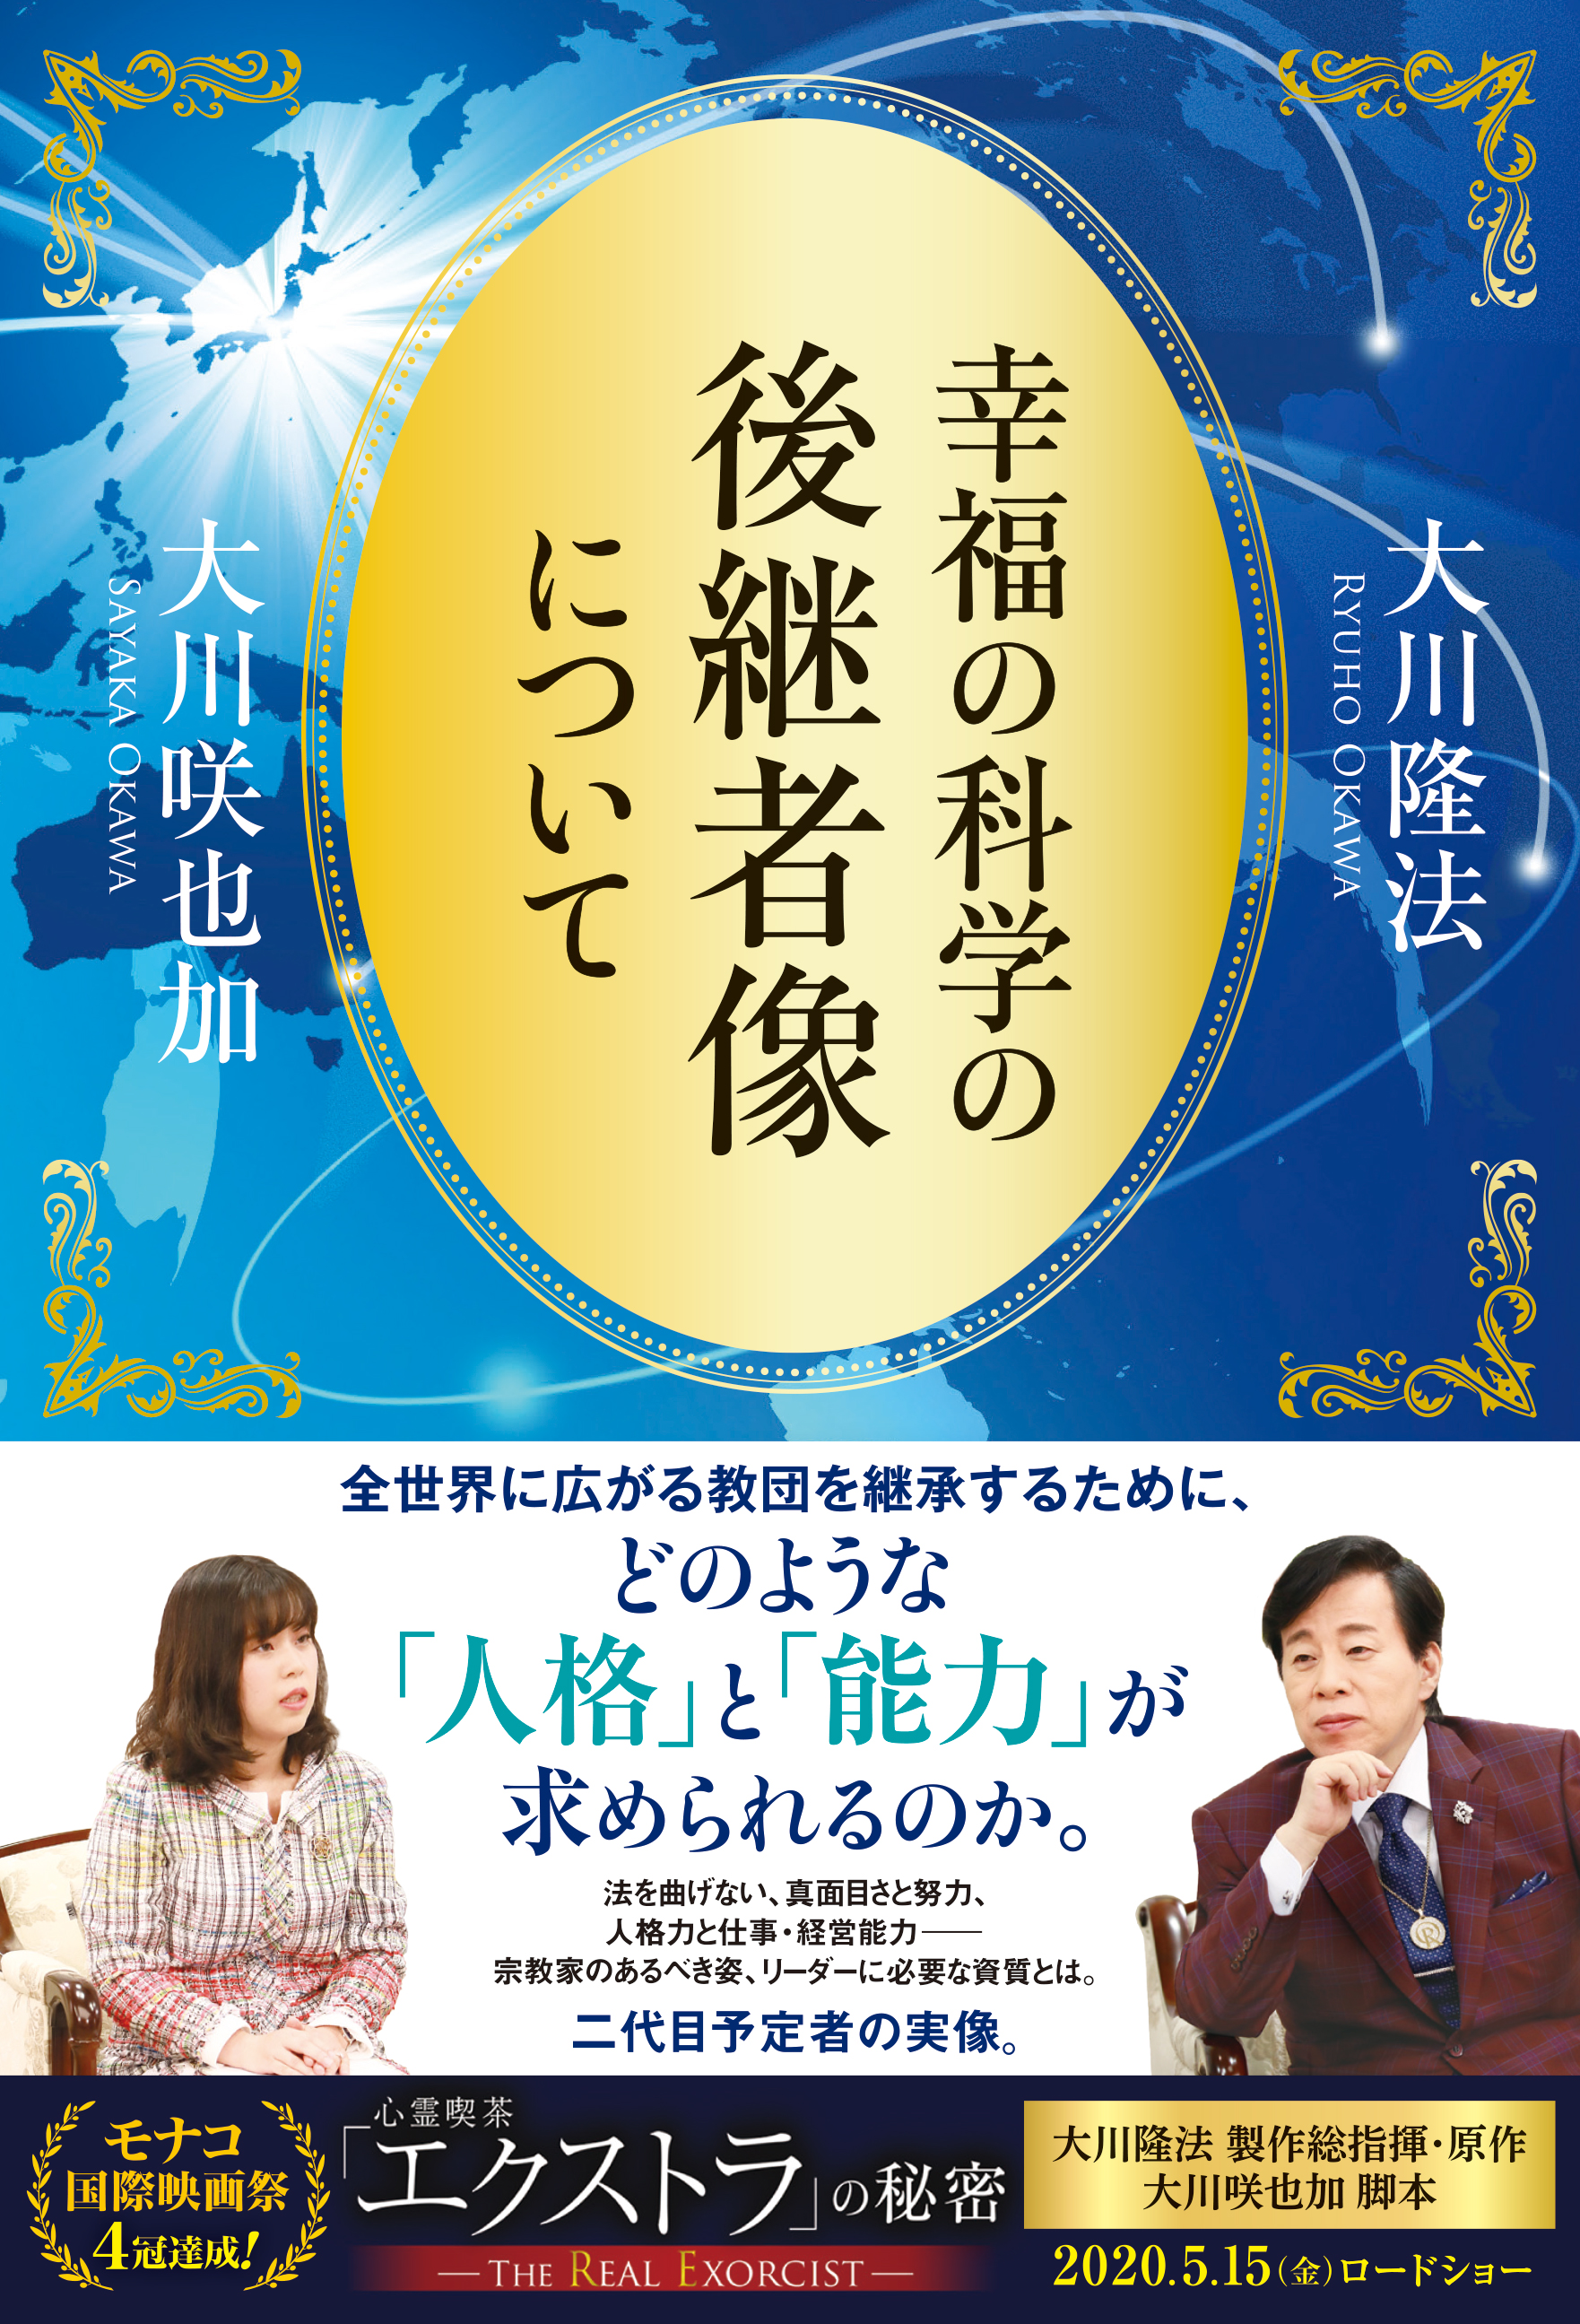 幸福の科学 DVD 大川隆法 - 邦楽